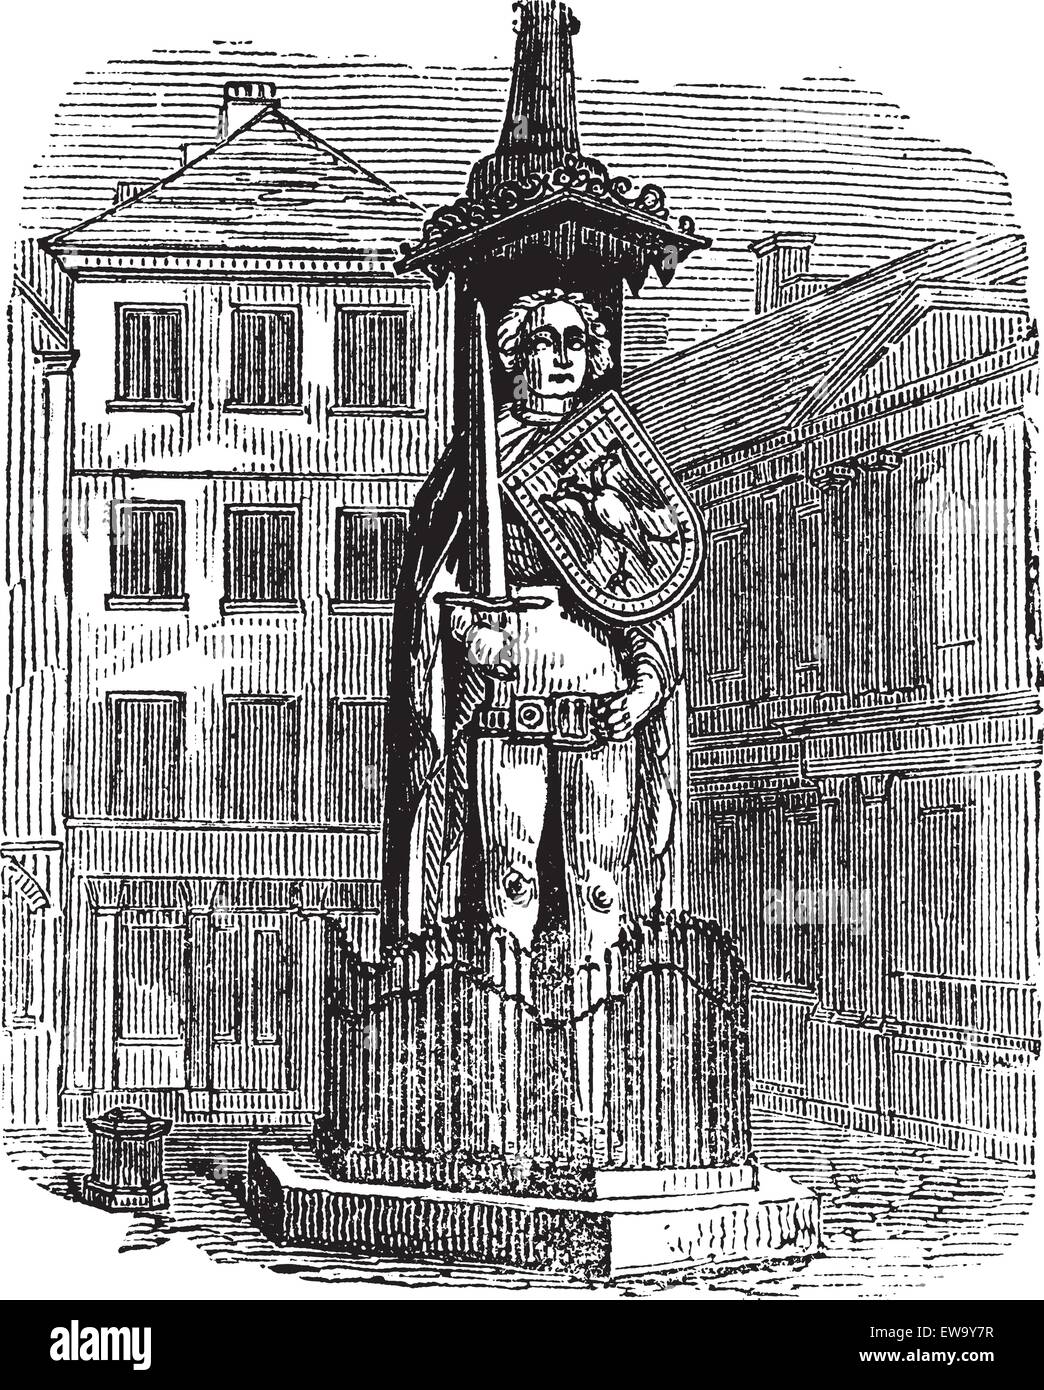 Bremen Roland, statue, Bremen, Germany, old engraved illustration of Bremen Roland, statue, Bremen, Germany, 1890s. Stock Vector